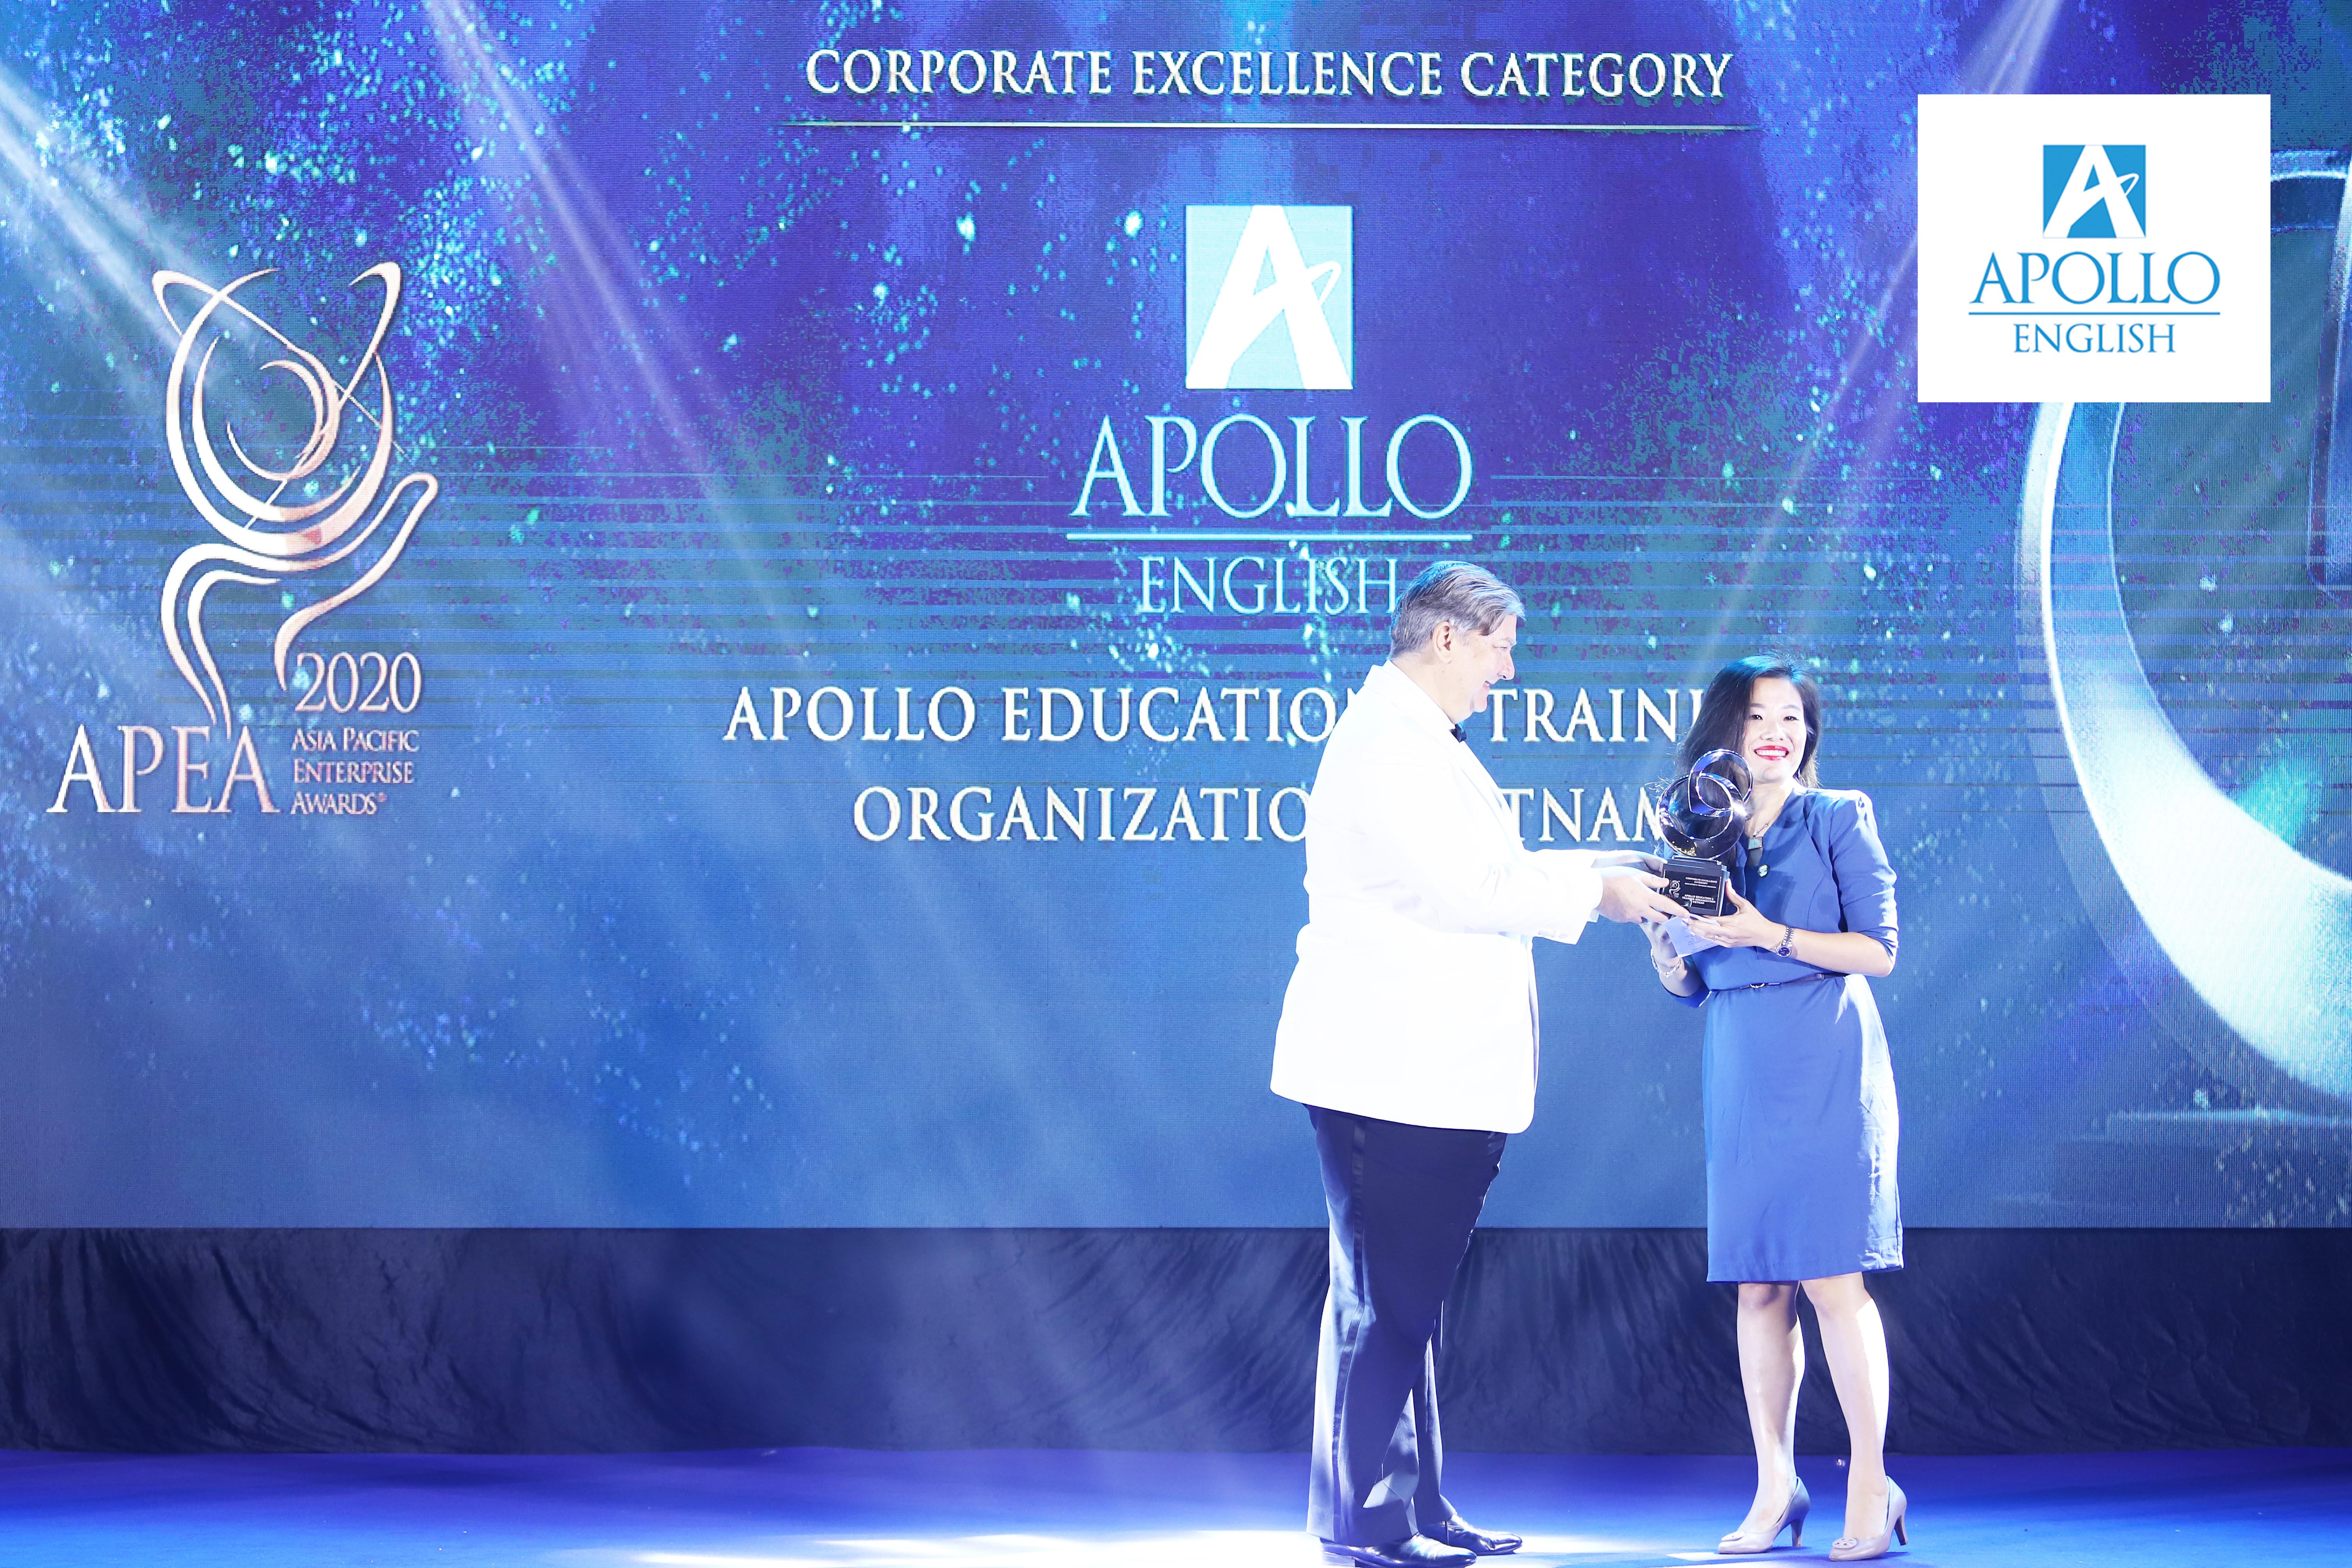 Bà Vũ Diệu Trang - CEO Apollo English nhận giải thưởng Doanh nghiệp xuất sắc châu Á - Thái Bình Dương 2020